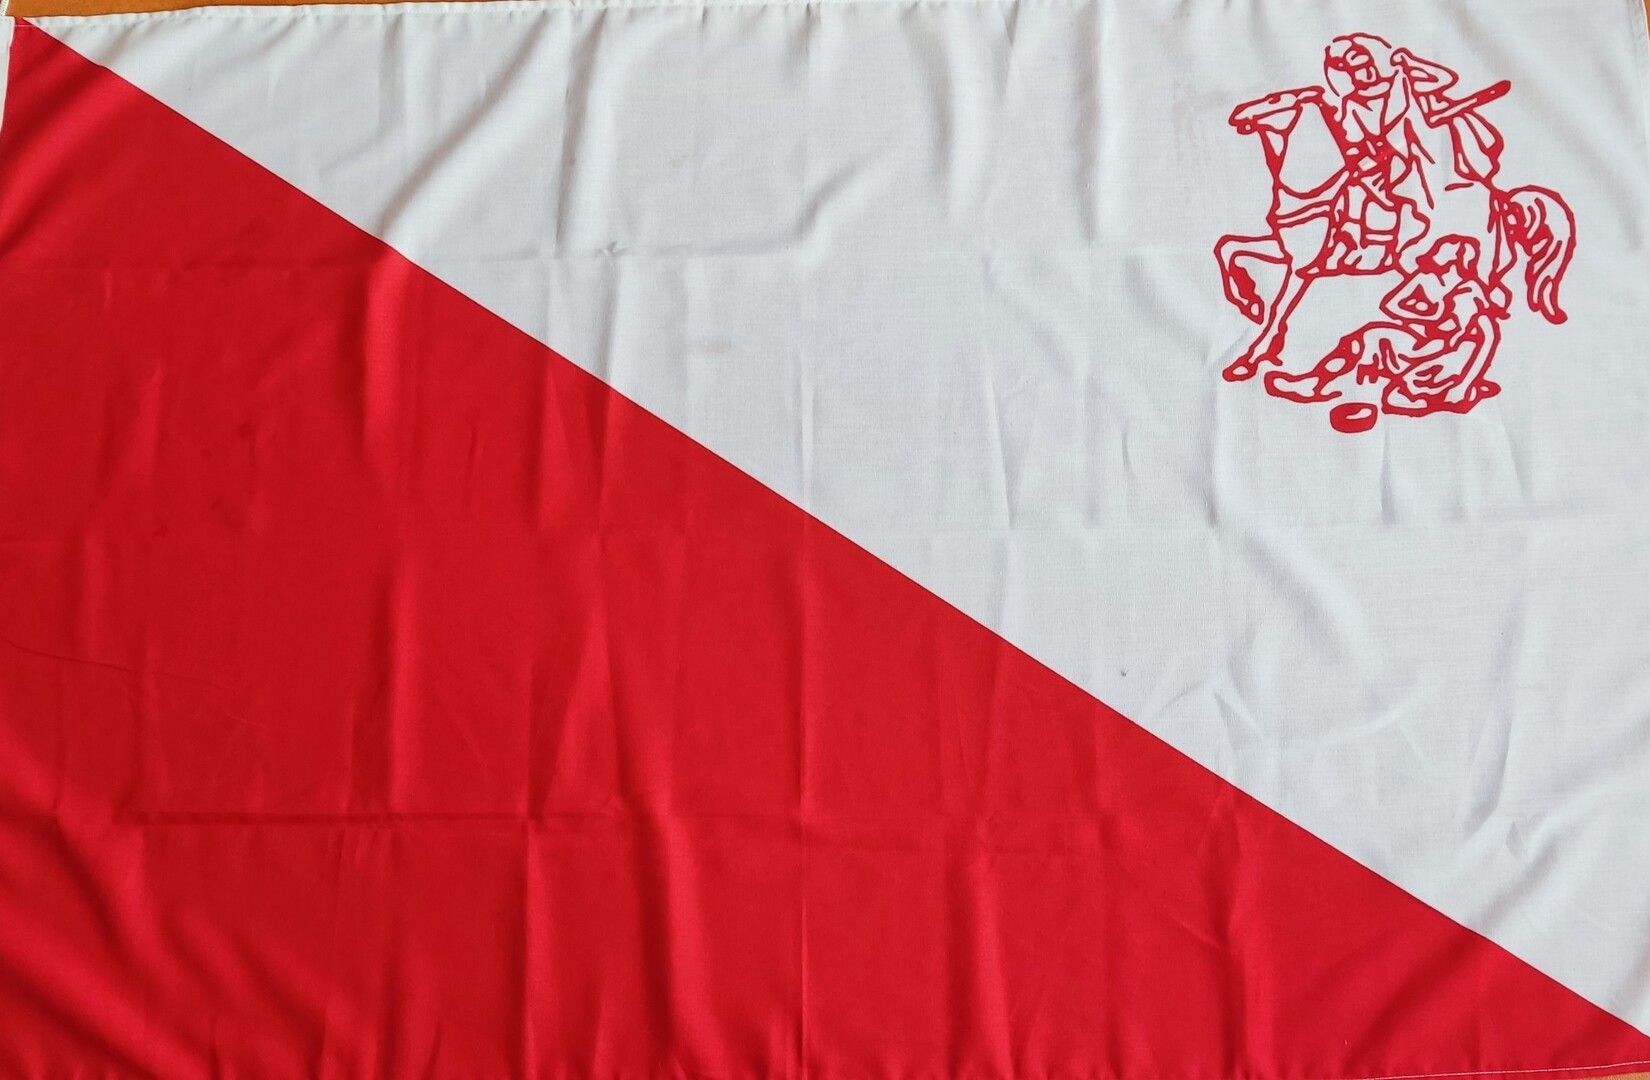 Sint-Maartensvlag van Utrecht